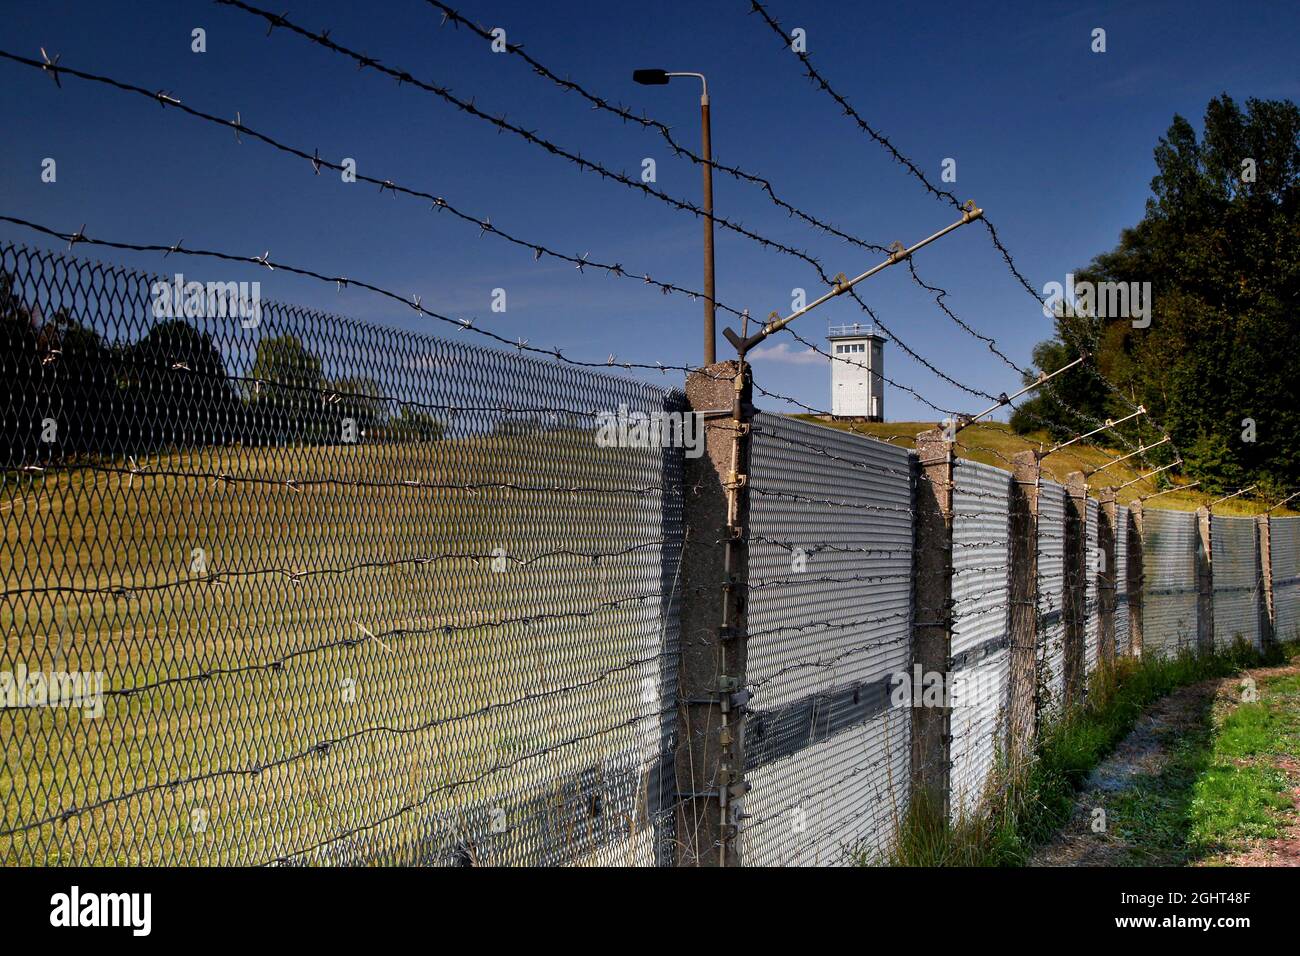 Fortificazione di confine con recinzione di confine, recinzione in metallo espanso, recinzione di confine, recinzione in filo spinato, percorso a colonna, percorso piastra perforata, osservazione Foto Stock